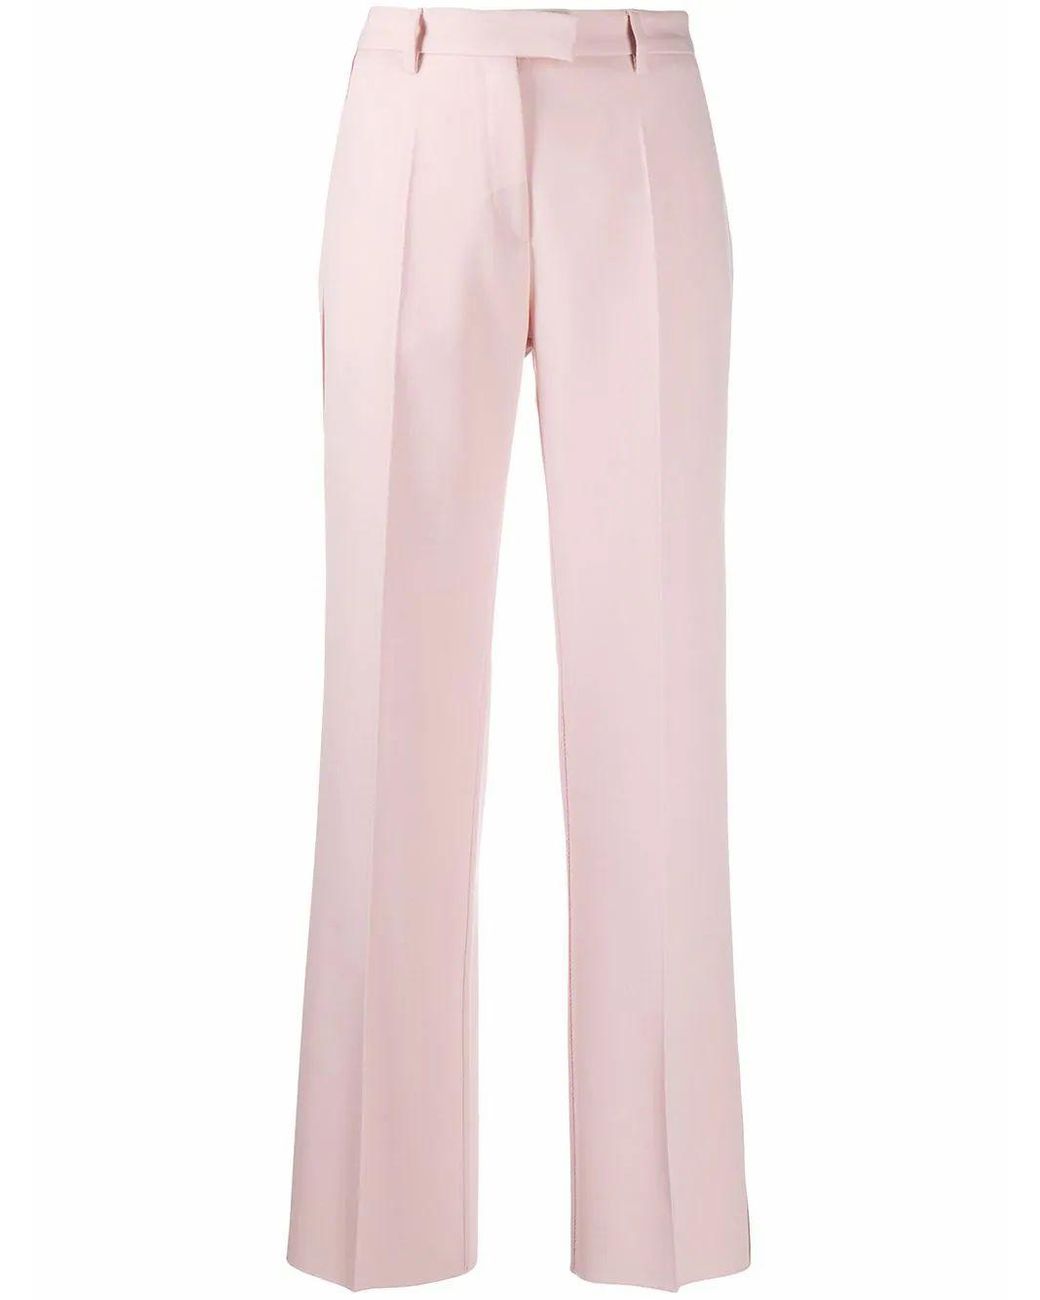 Golden Goose Deluxe Brand Wool Pants in Pink - Lyst